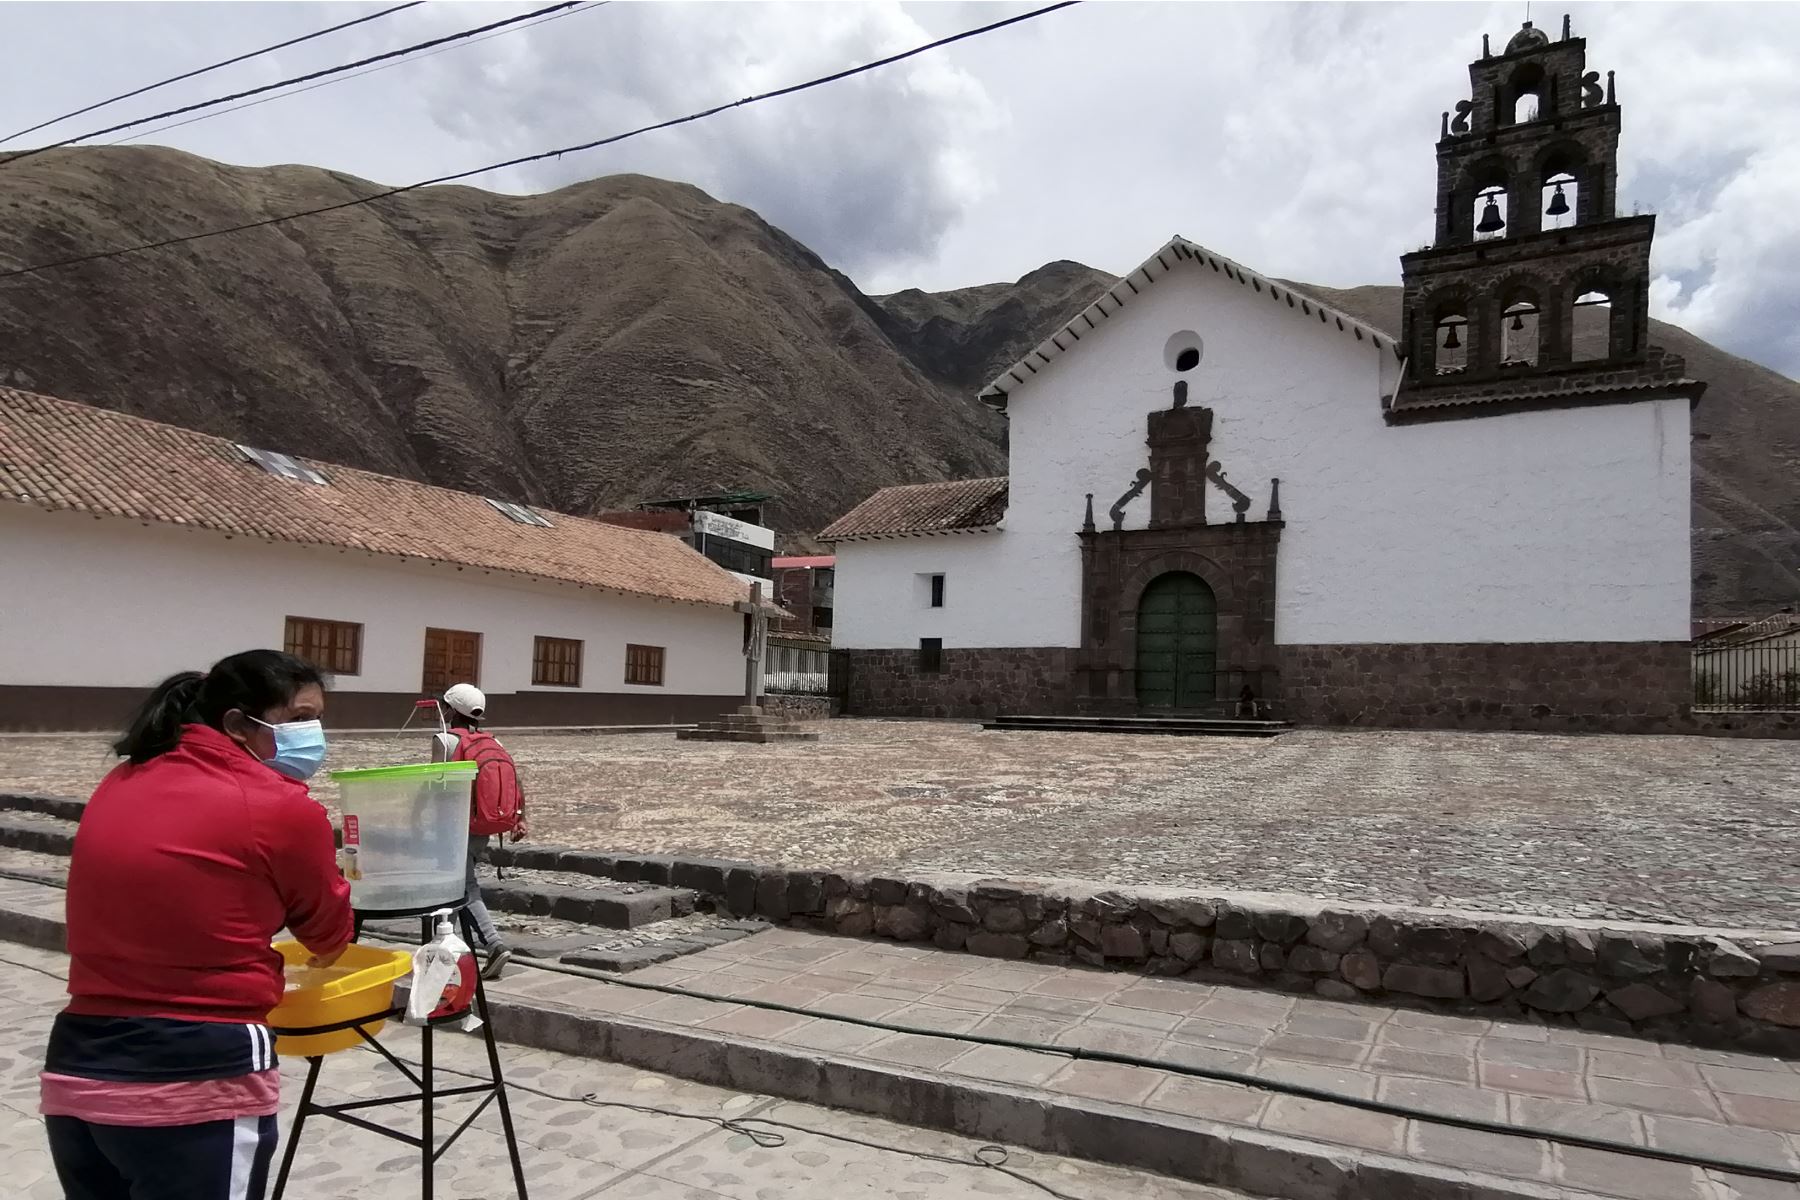 Por segundo año consecutivo se realiza el festival del típico pan cusqueño Huaro en el distrito que lleva el mismo nombre, ubicado al sureste de la ciudad del Cusco, a unos 40 minutos en auto por la vía nacional Cusco-Puno-Arequipa. Foto: Percy Hurtado Santillán